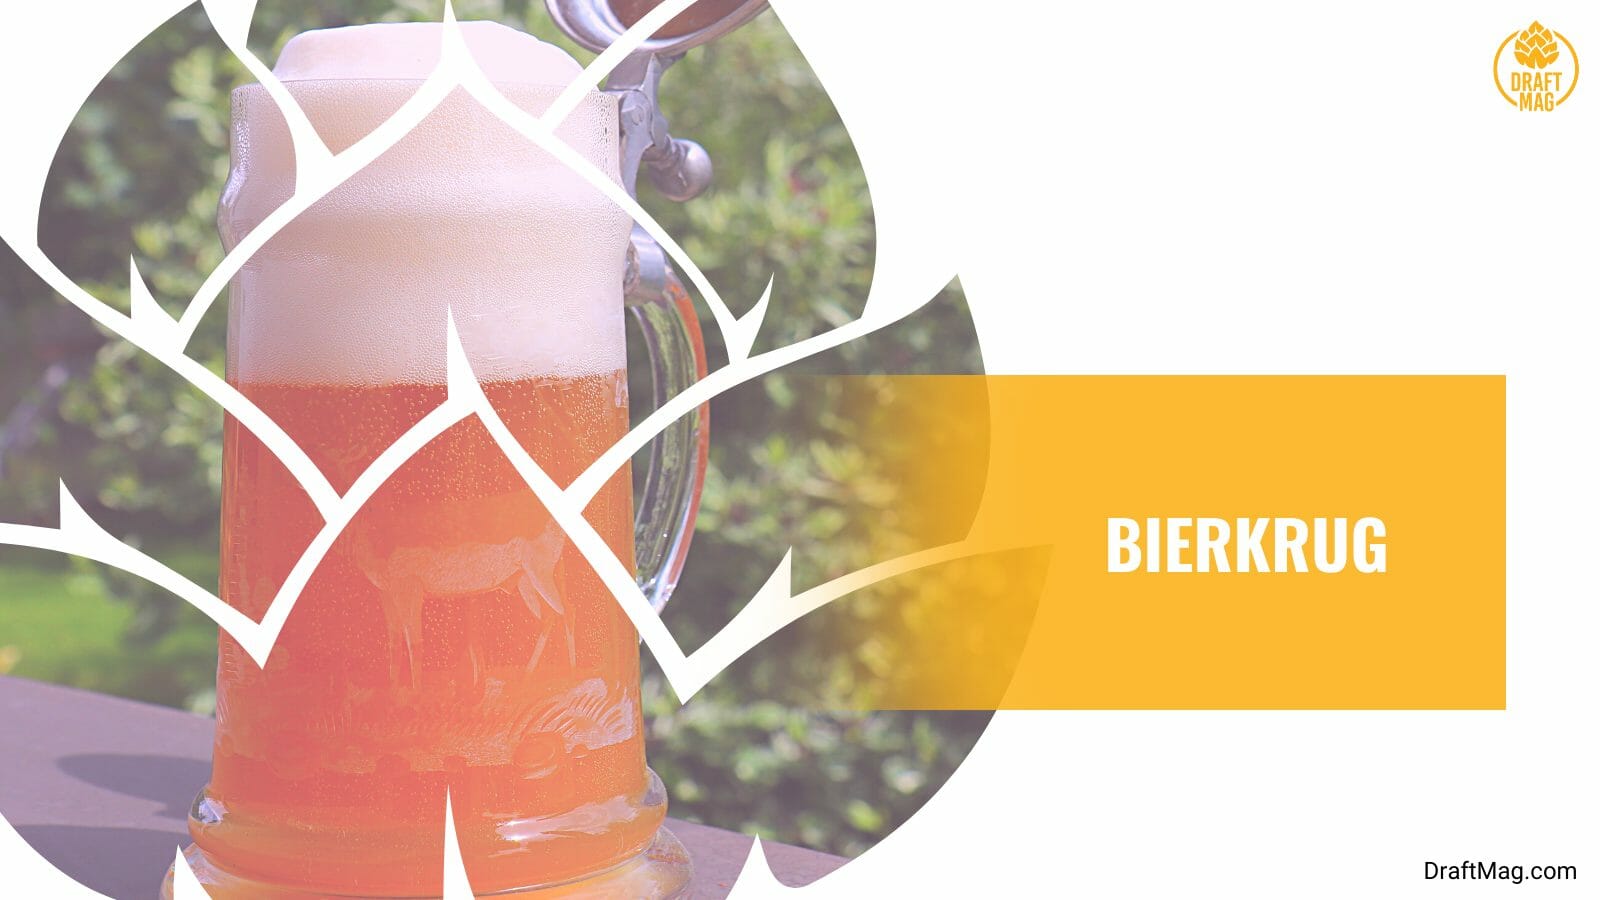 A glass of bierkrug beer